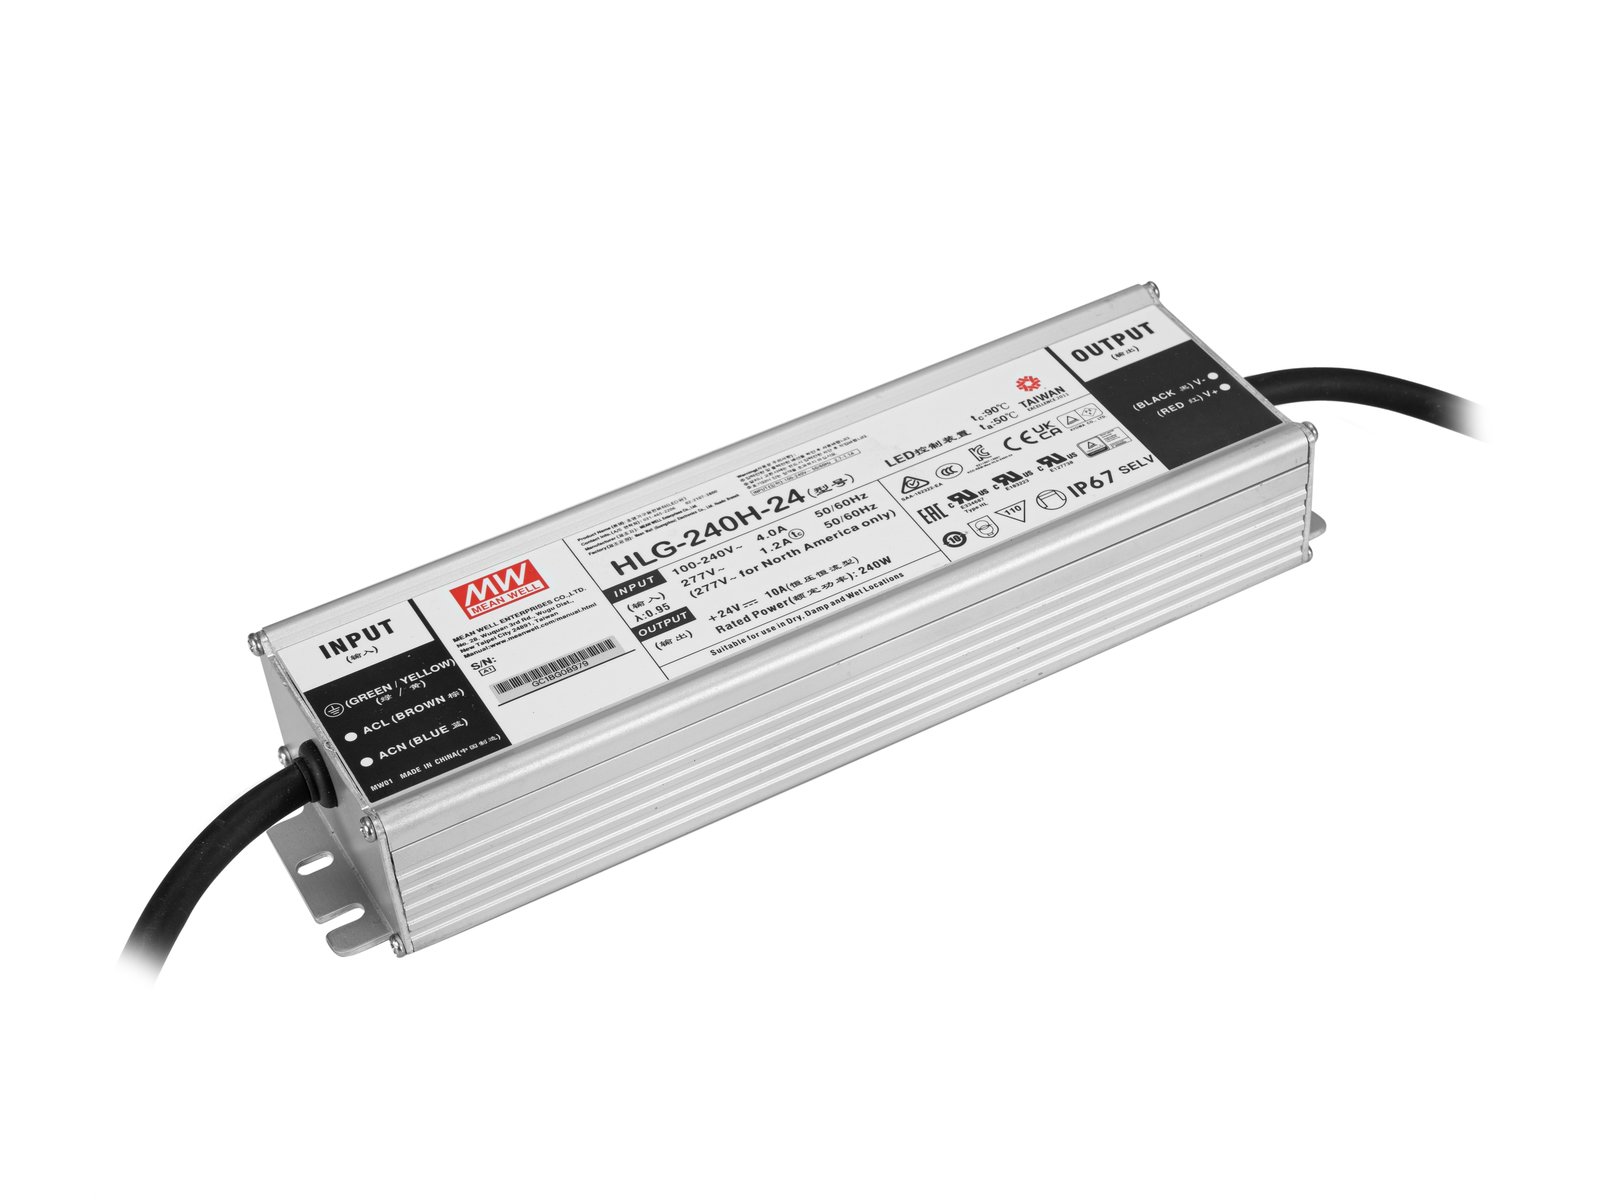 MEANWELL LED Power Supply 240W / 24V IP67 HLG-240H-24